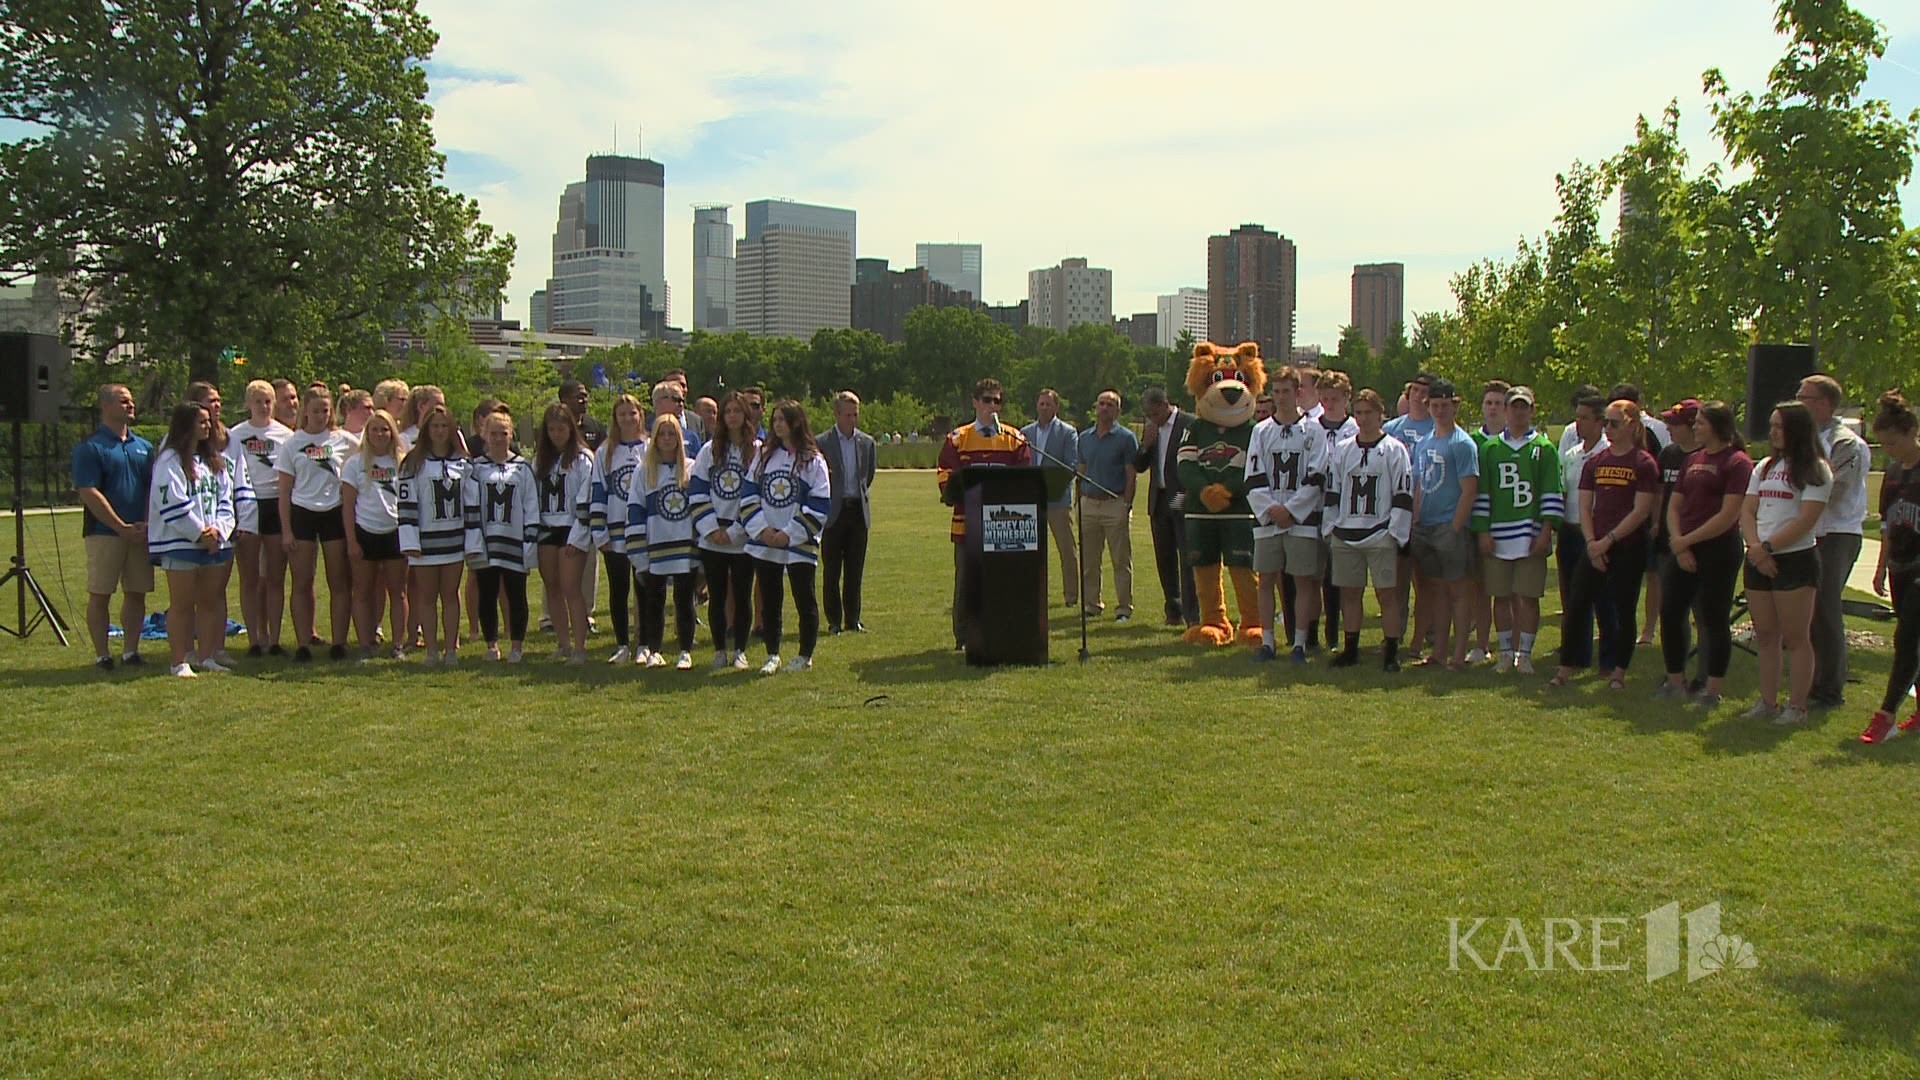 Minneapolis will host the outdoor hockey festivities